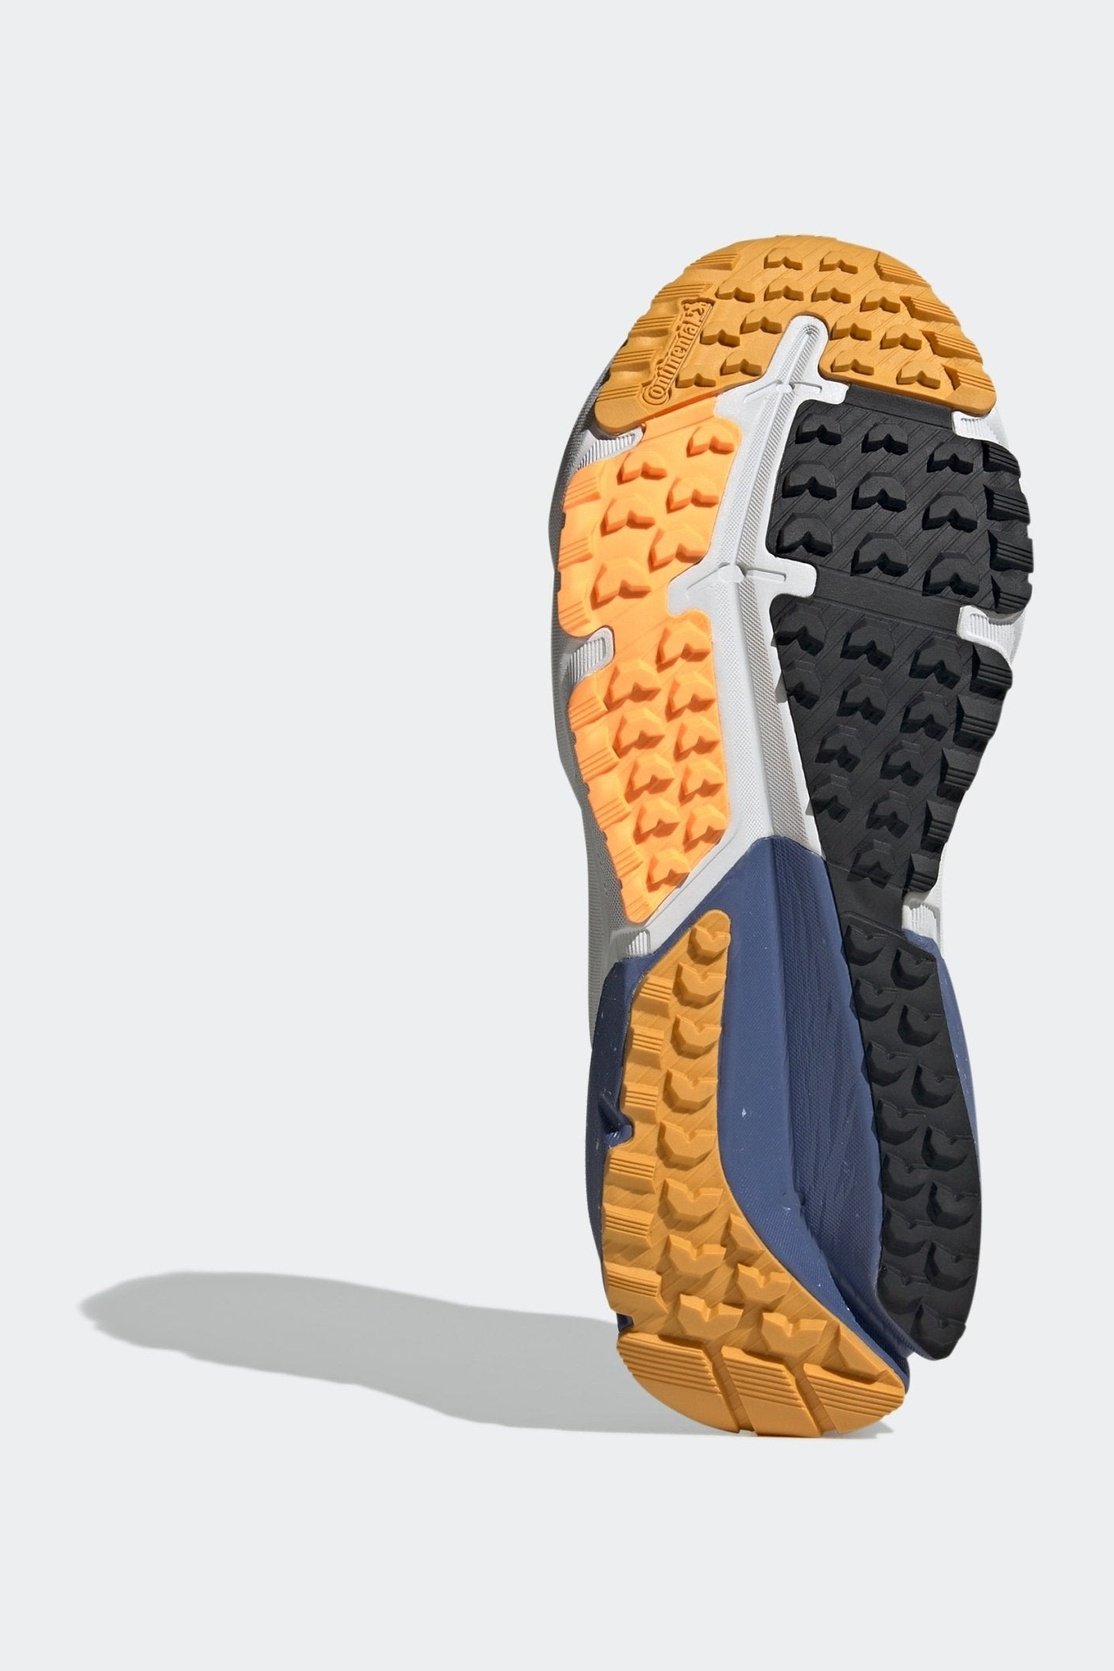 ADIDAS - נעלי ספורט לנשים ADISTAR COLD.RDY בצבע אפור וכחול - MASHBIR//365